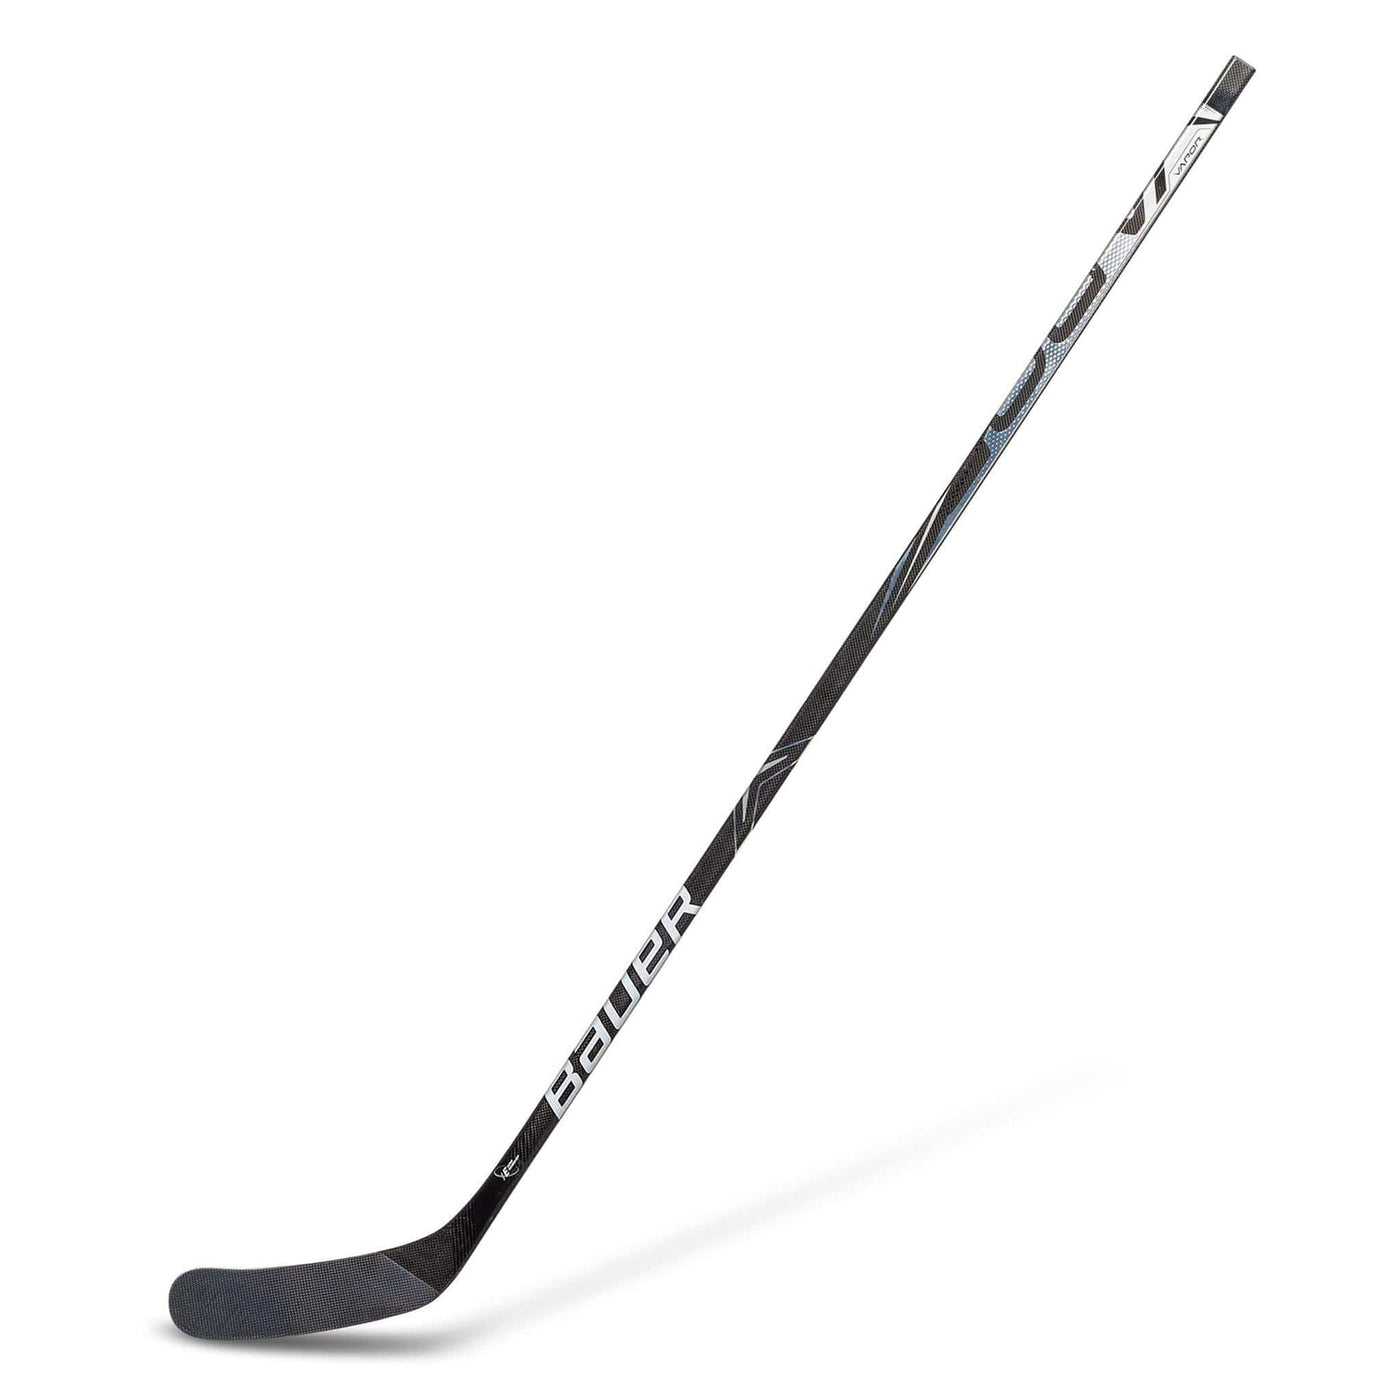 Bauer Vapor X Shift Pro Senior Hockey Stick (2019)